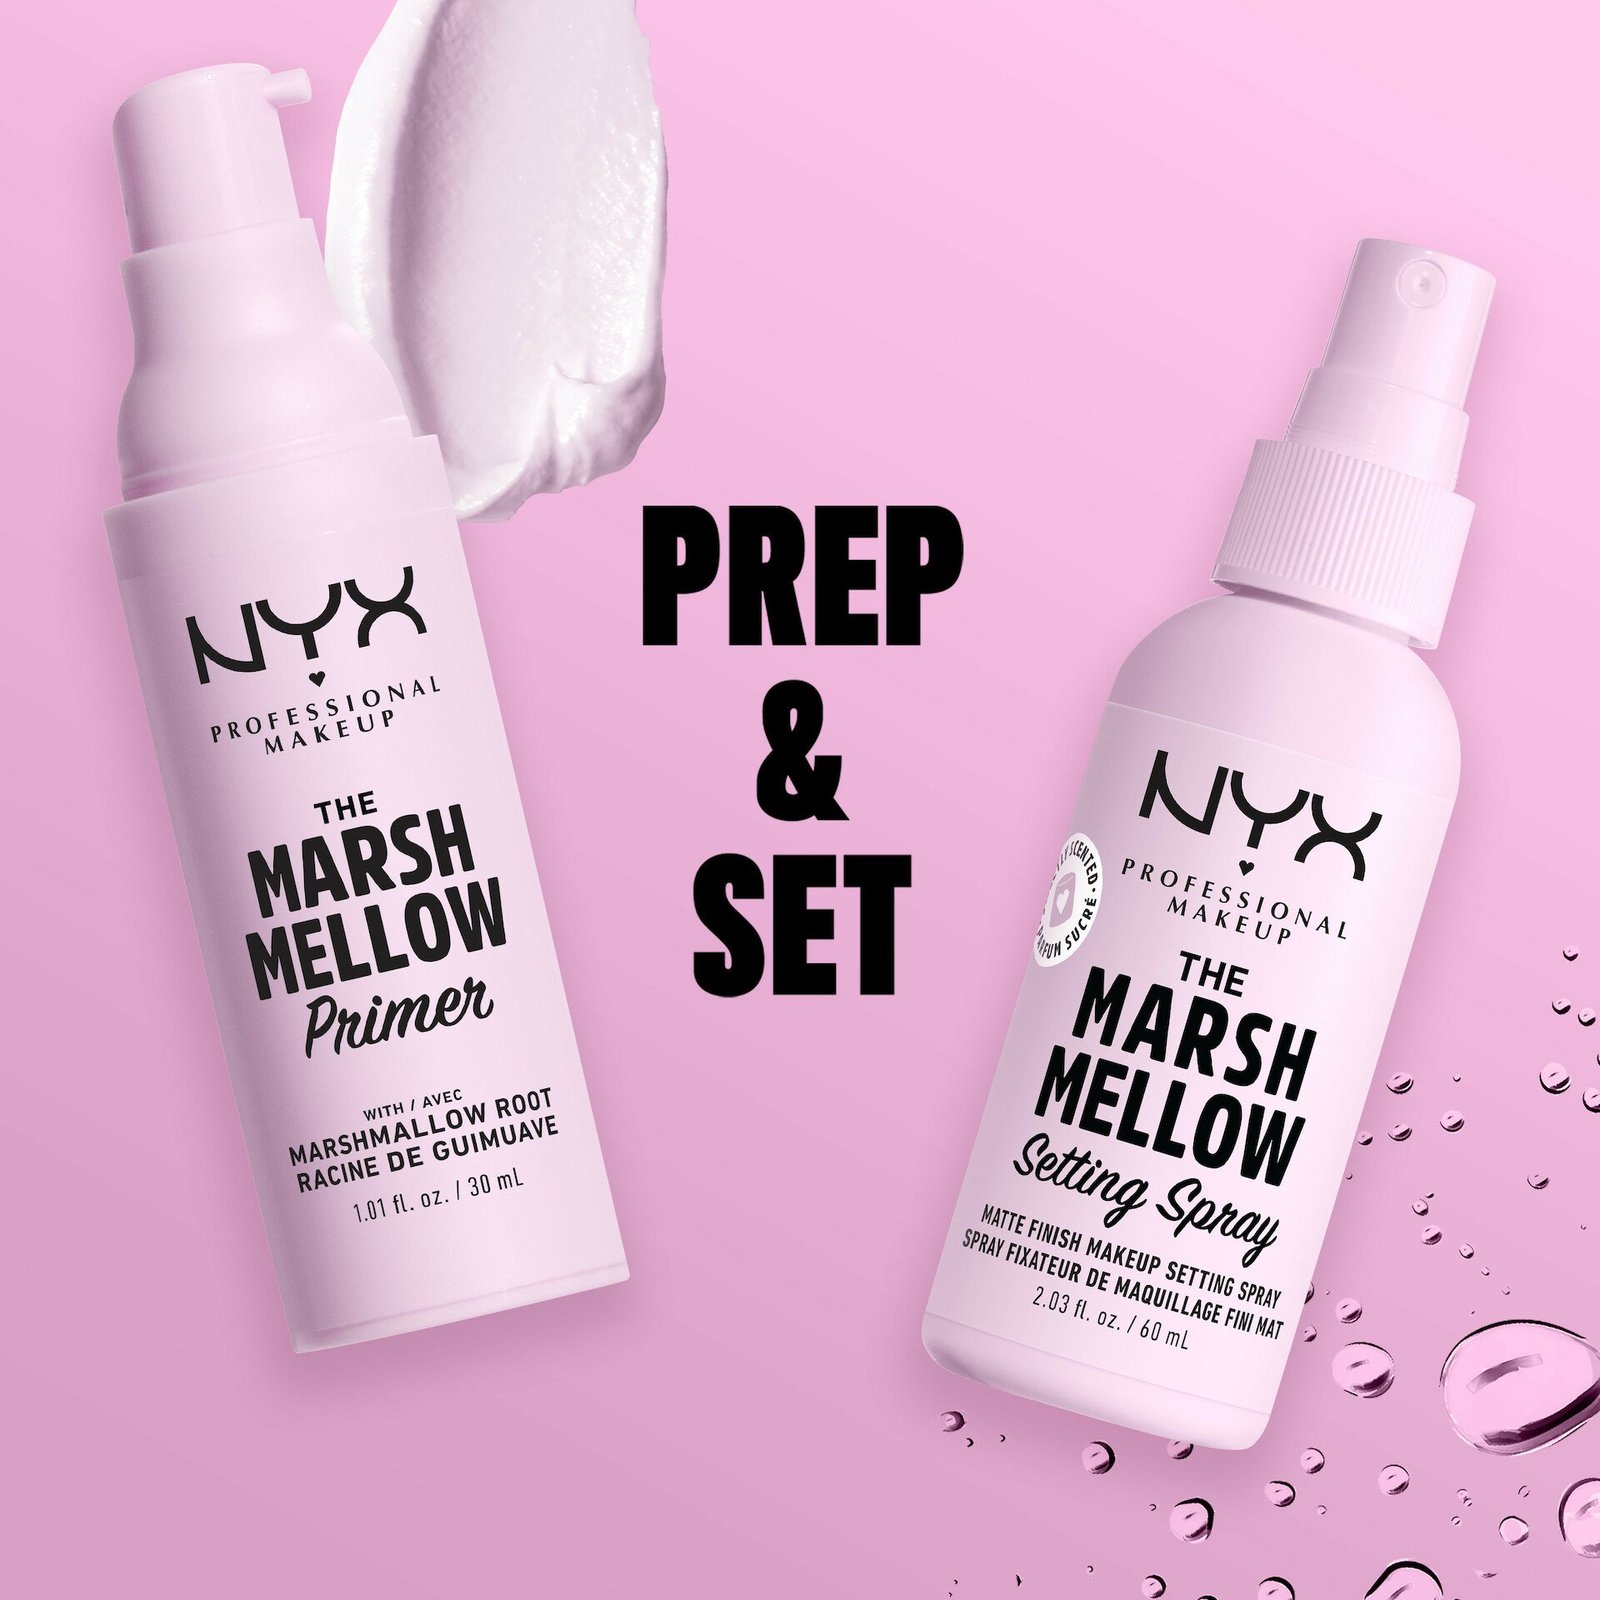 NYX Professional Makeup Marshmellow 1 Primer 30 ml